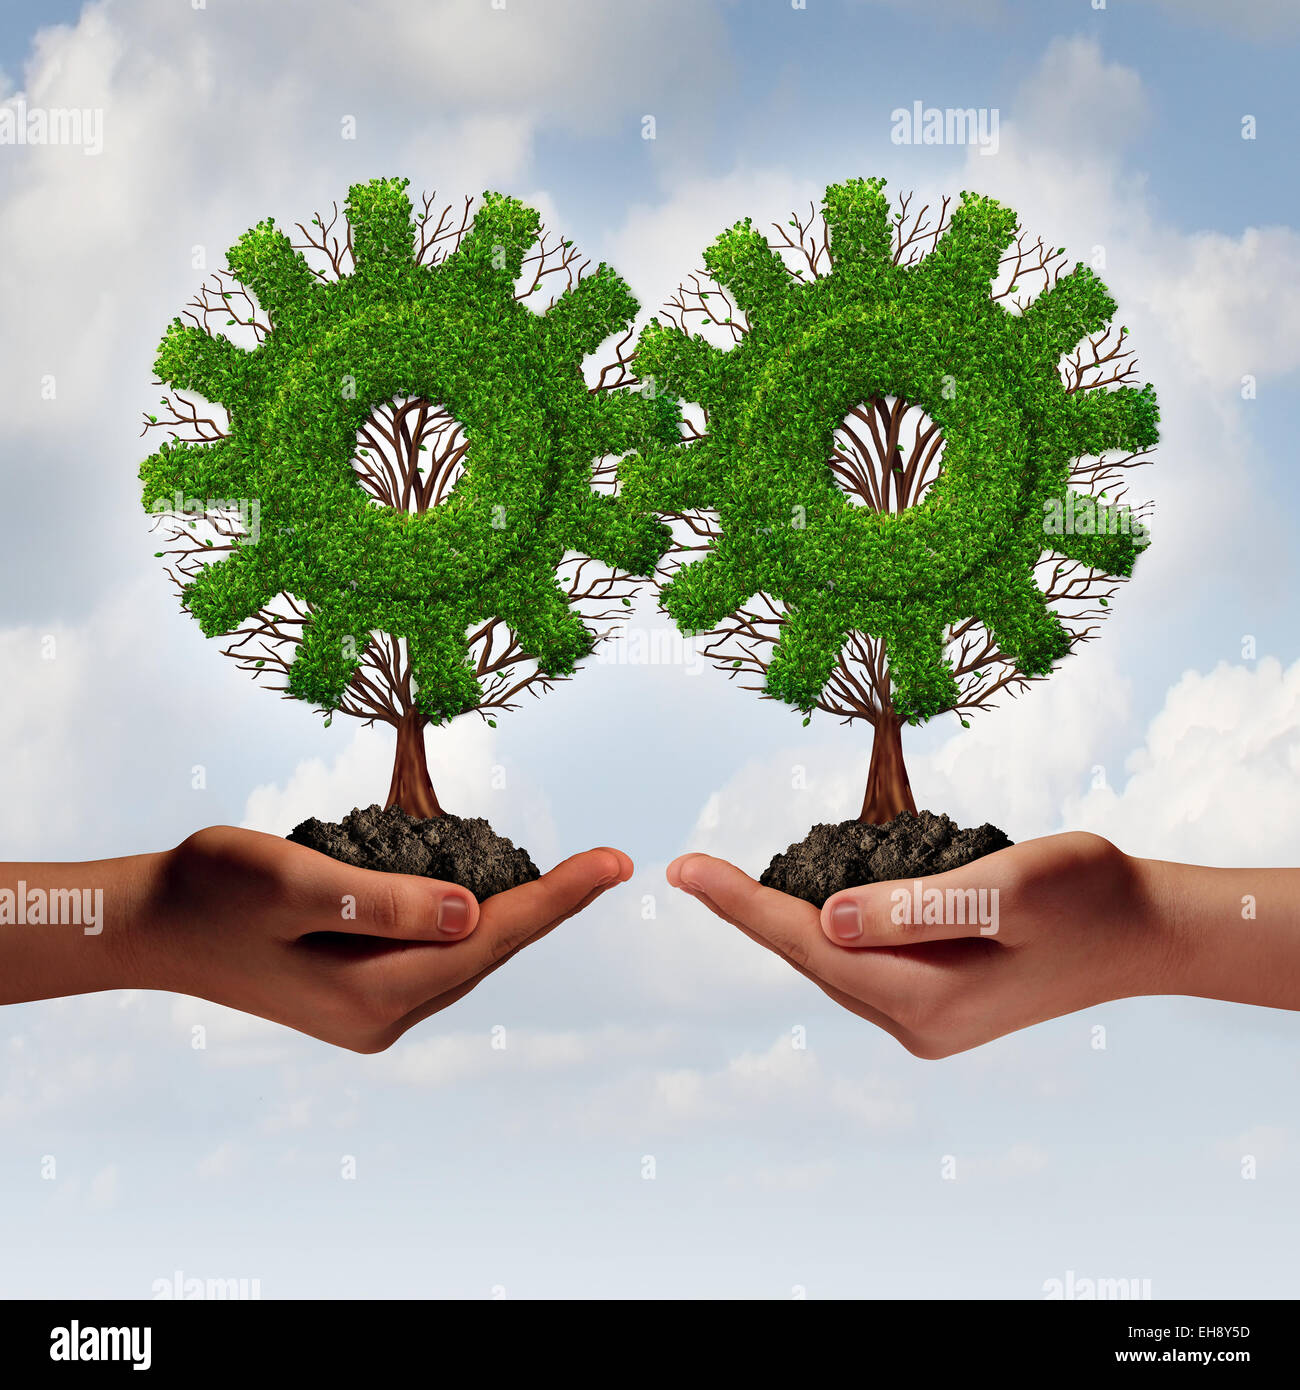 Equipo Concepto estrategia empresarial como dos manos sosteniendo los árboles conectados como un engranaje o diente como una creciente colaboración financiera unidos juntos para el crecimiento corporativo y el trabajo en equipo. Foto de stock